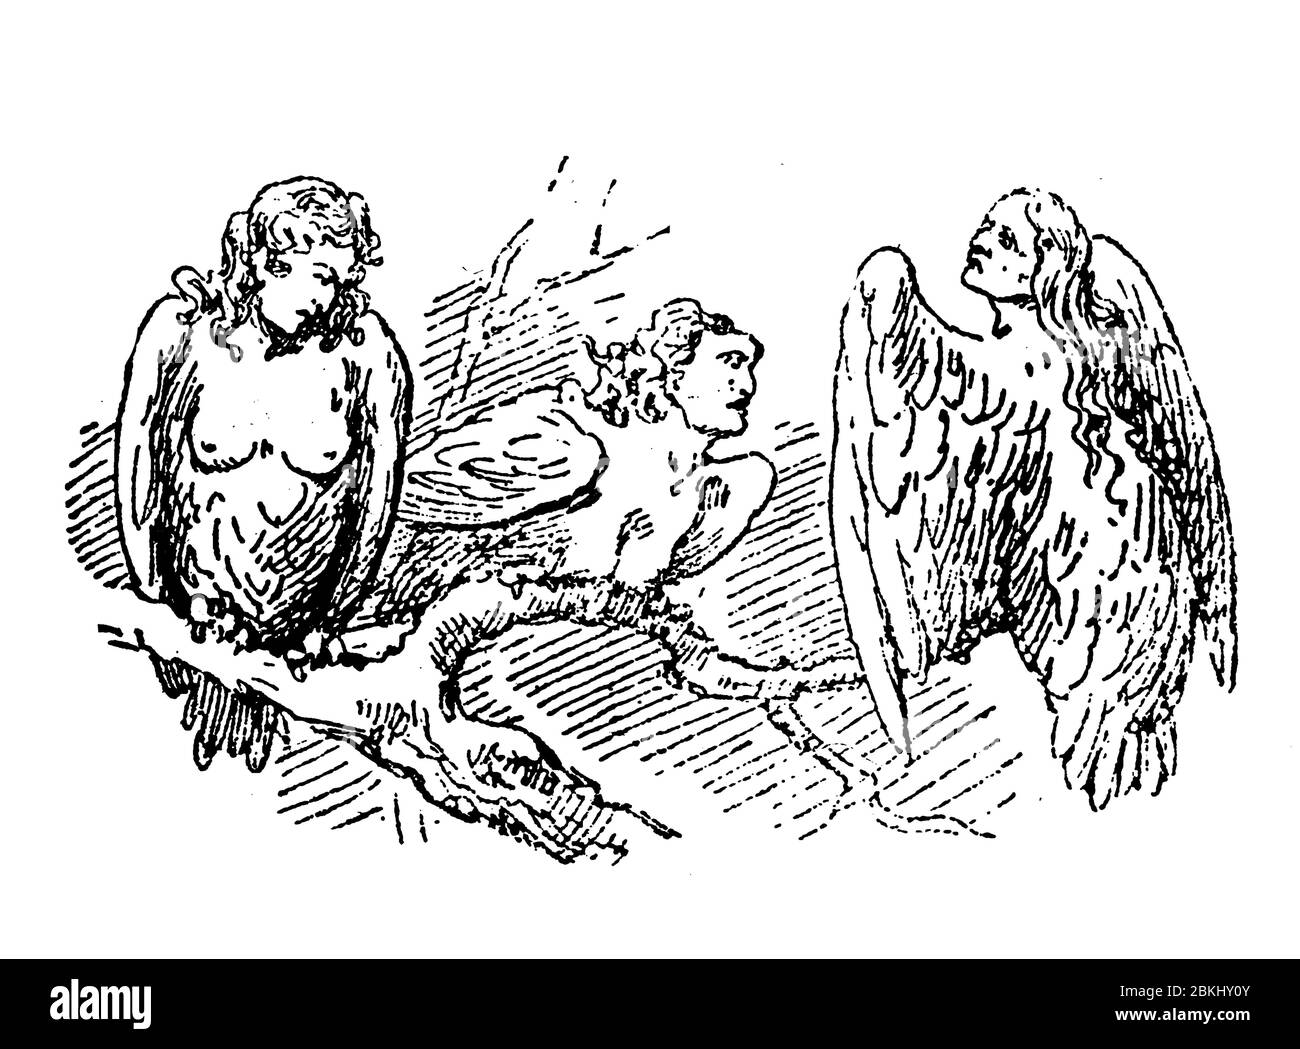 Tre Arpie, creature semimumane con teste di donna e mezzo uccello con ali e artigli, impersonazione dei venti di tempesta nella mitologia greca e romana Foto Stock